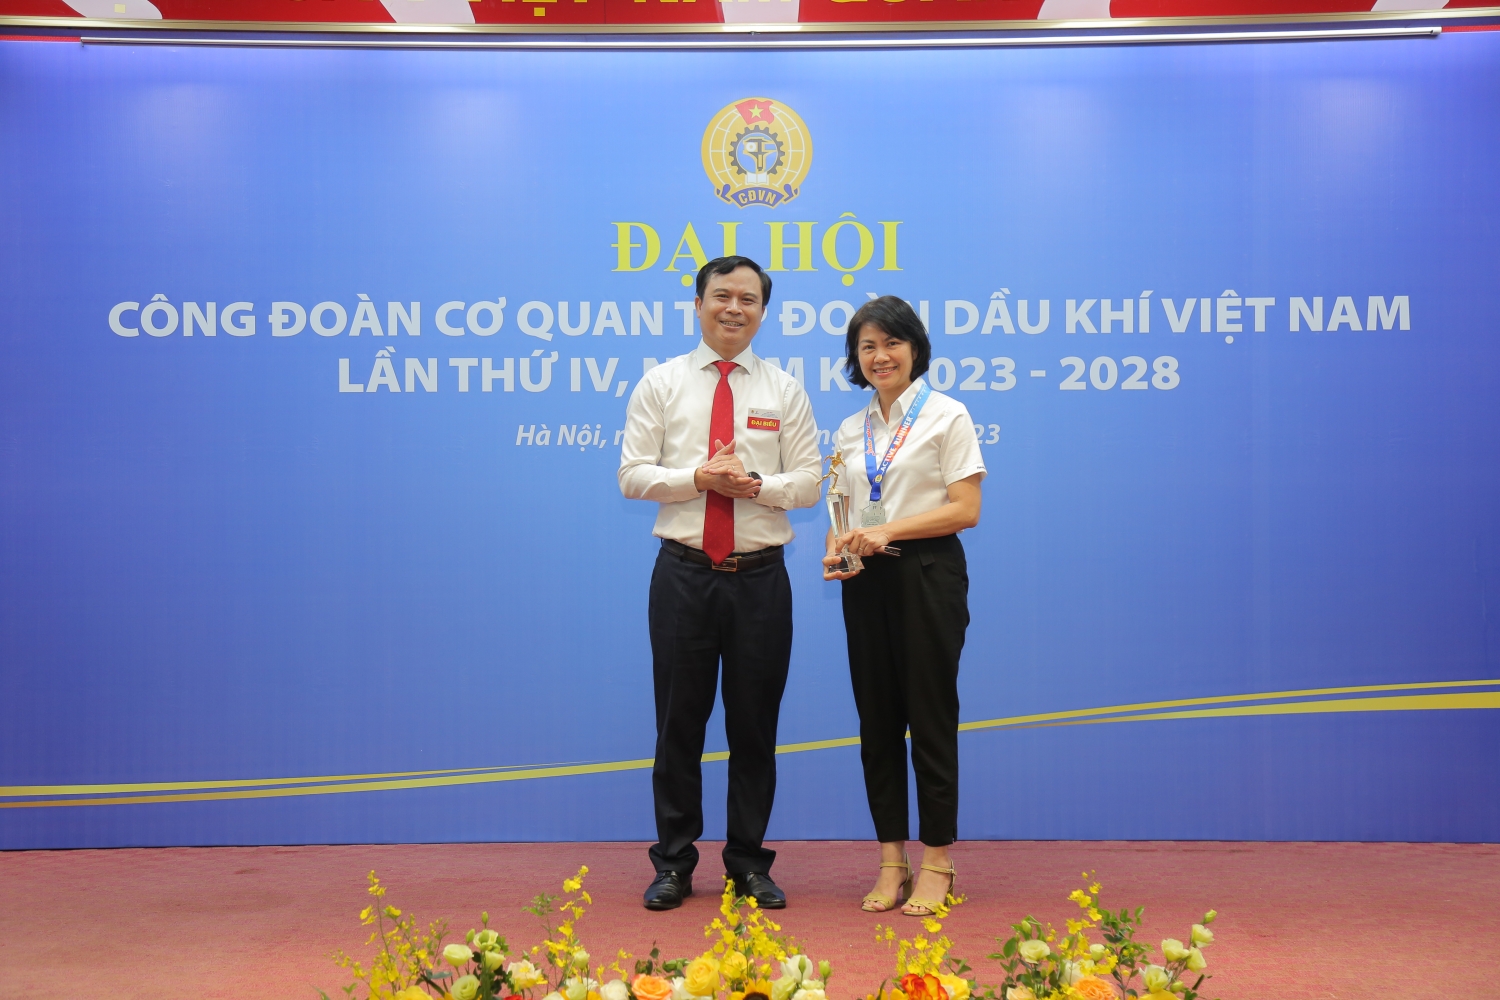 Công đoàn Cơ quan Tập đoàn trao giải cuộc thi Chạy bộ online Xuân Dầu khí 2023